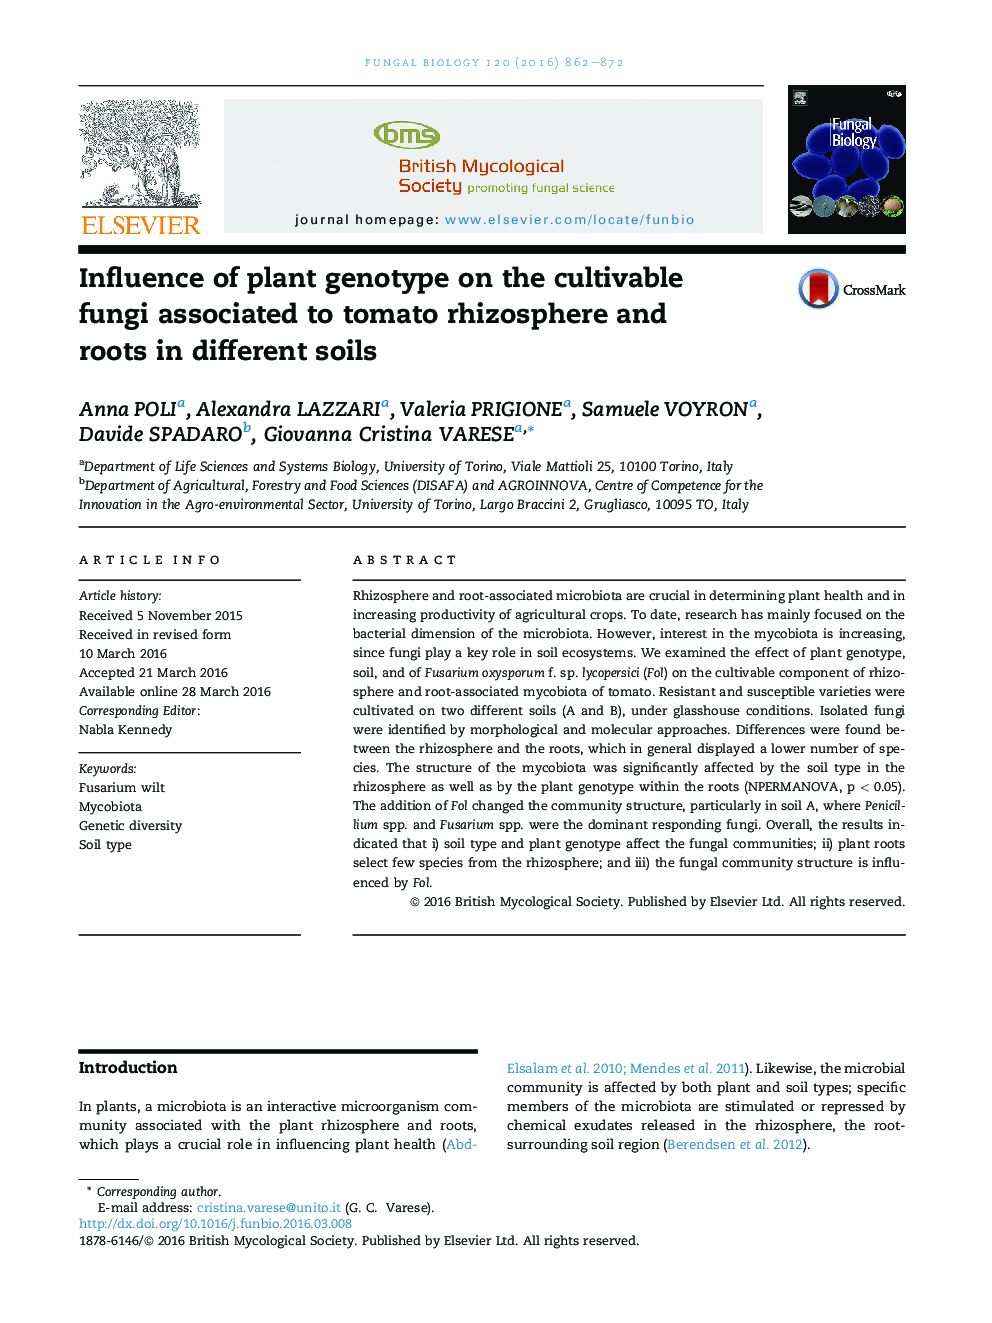 تأثیر ژنوتیپ گیاهی بر قارچ های کشتی مرتبط با ریزوسفر گوجه فرنگی و ریشه ها در خاک های مختلف 